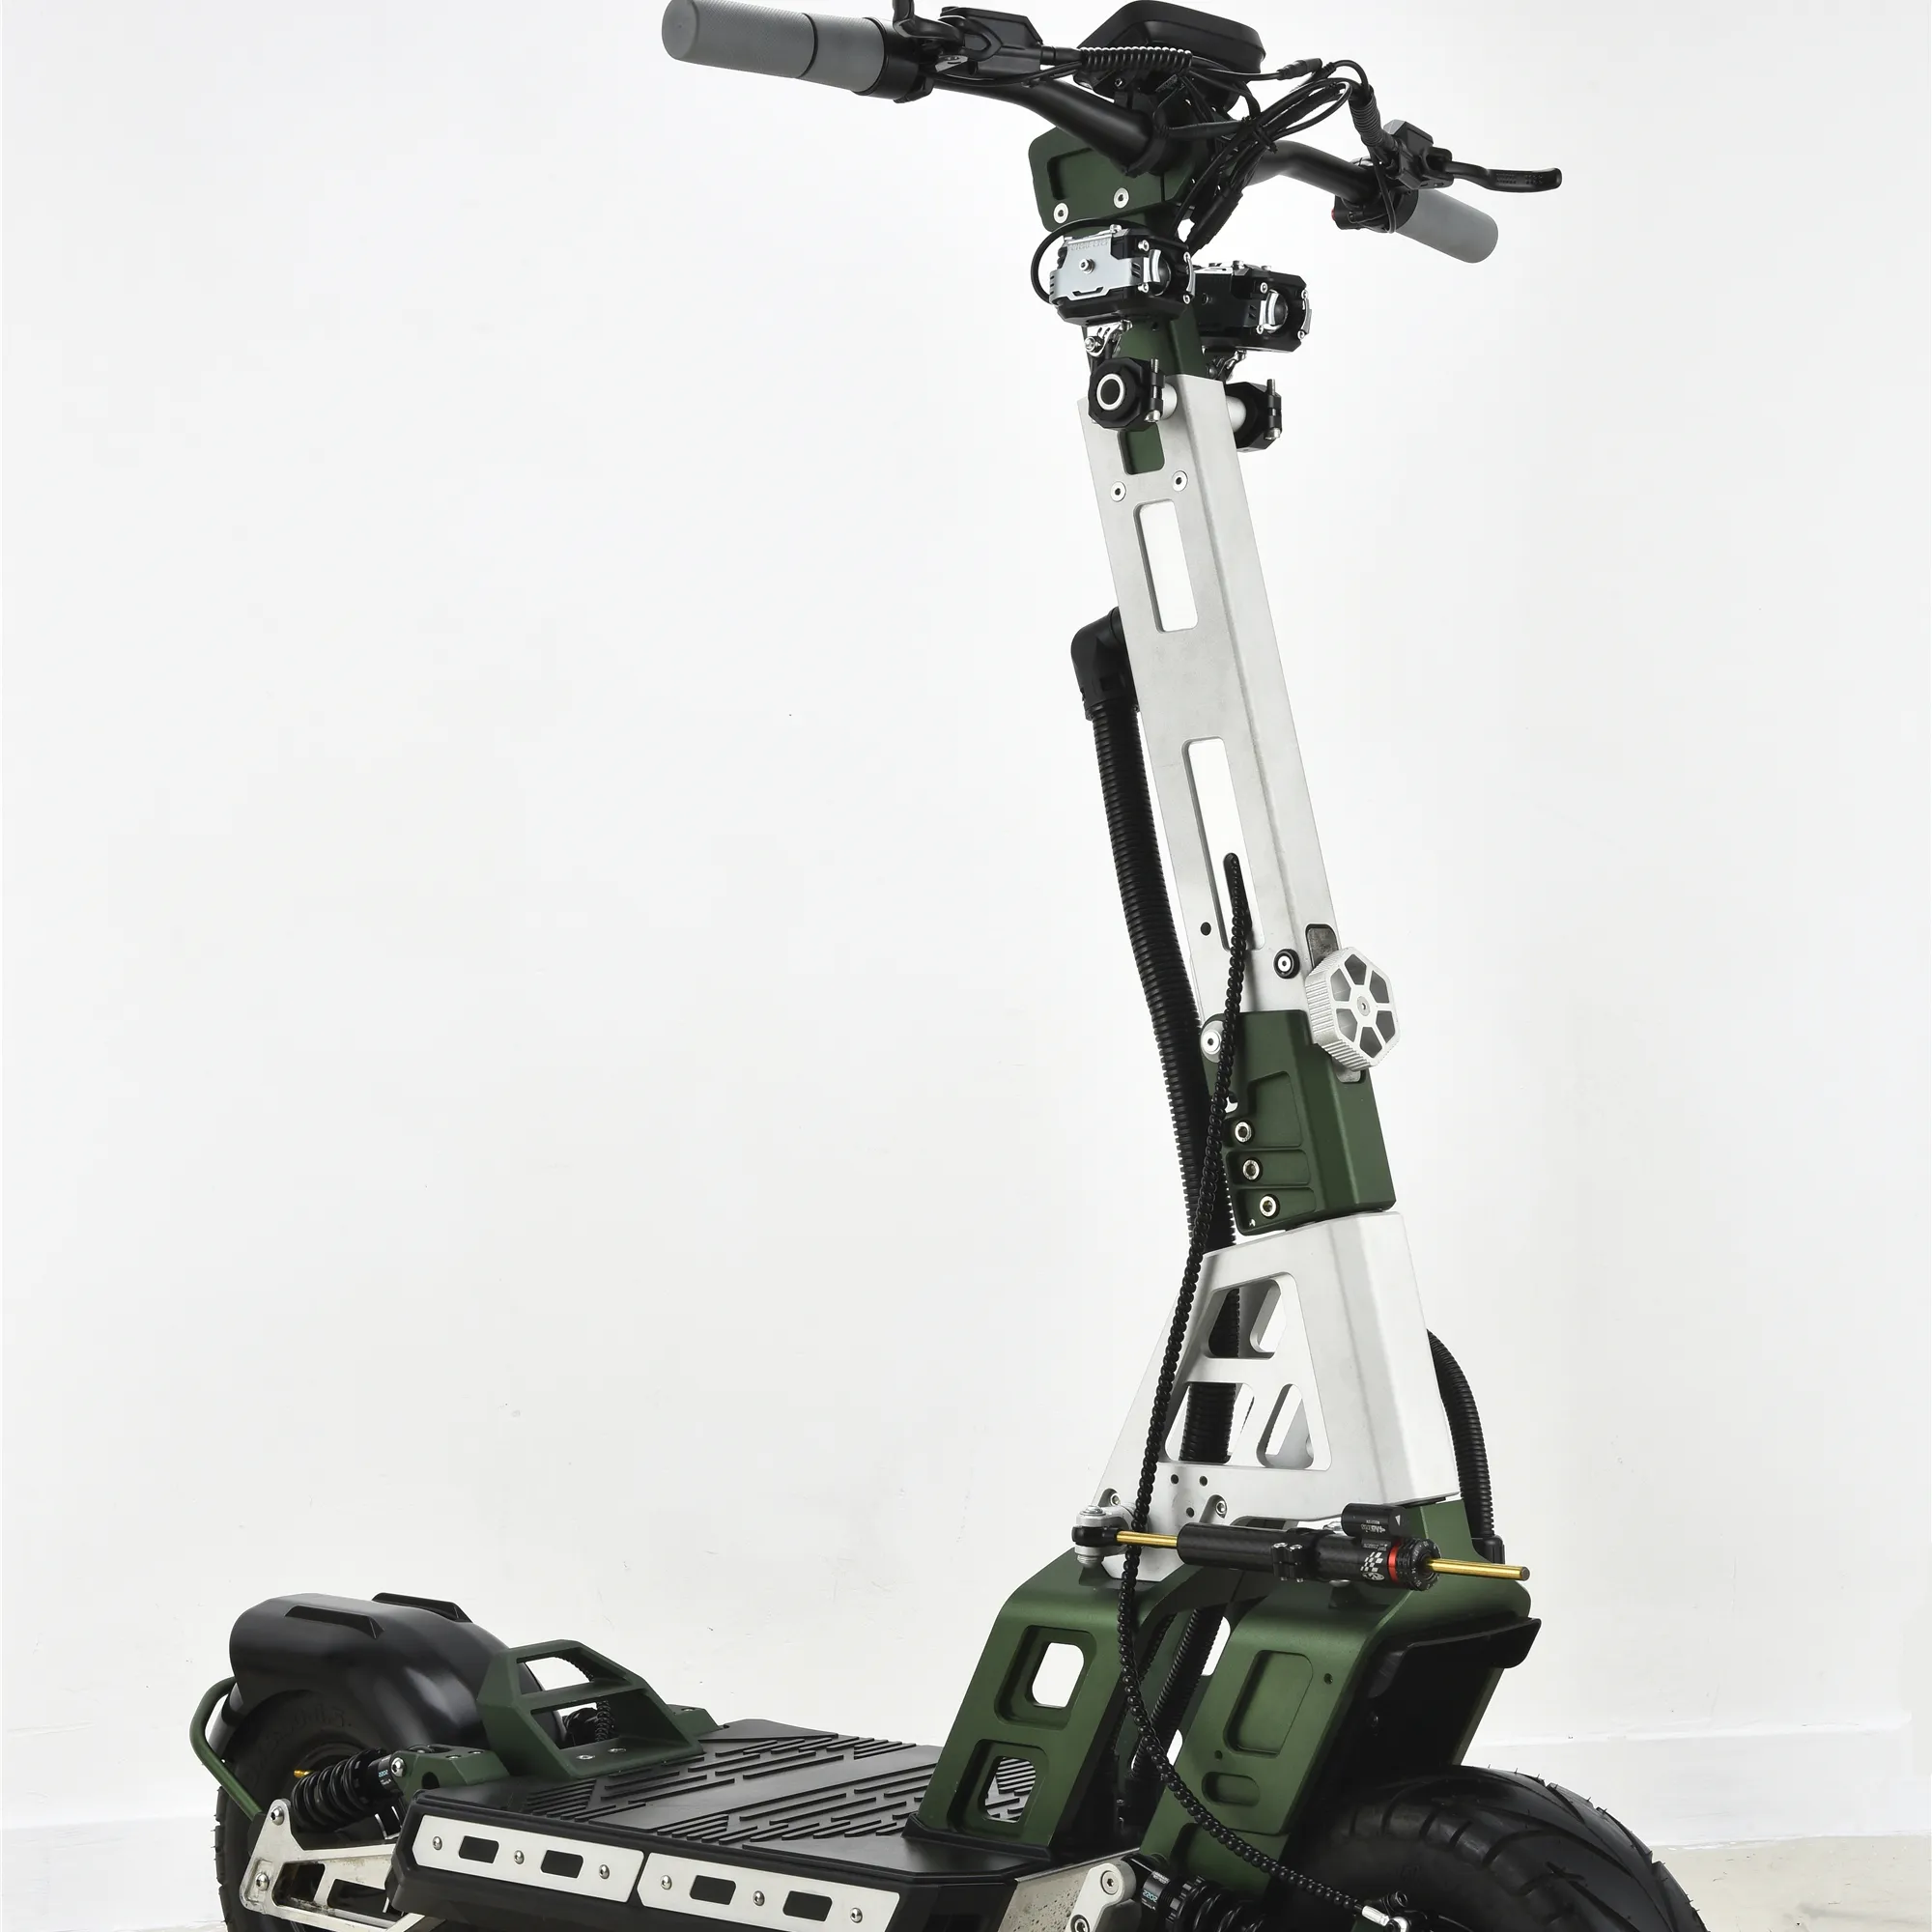 Yeni ürün ucuz 2 tekerlekli elektrikli Scooter 1600w büyük güç Stand Up katlanabilir E Scooter yetişkin için